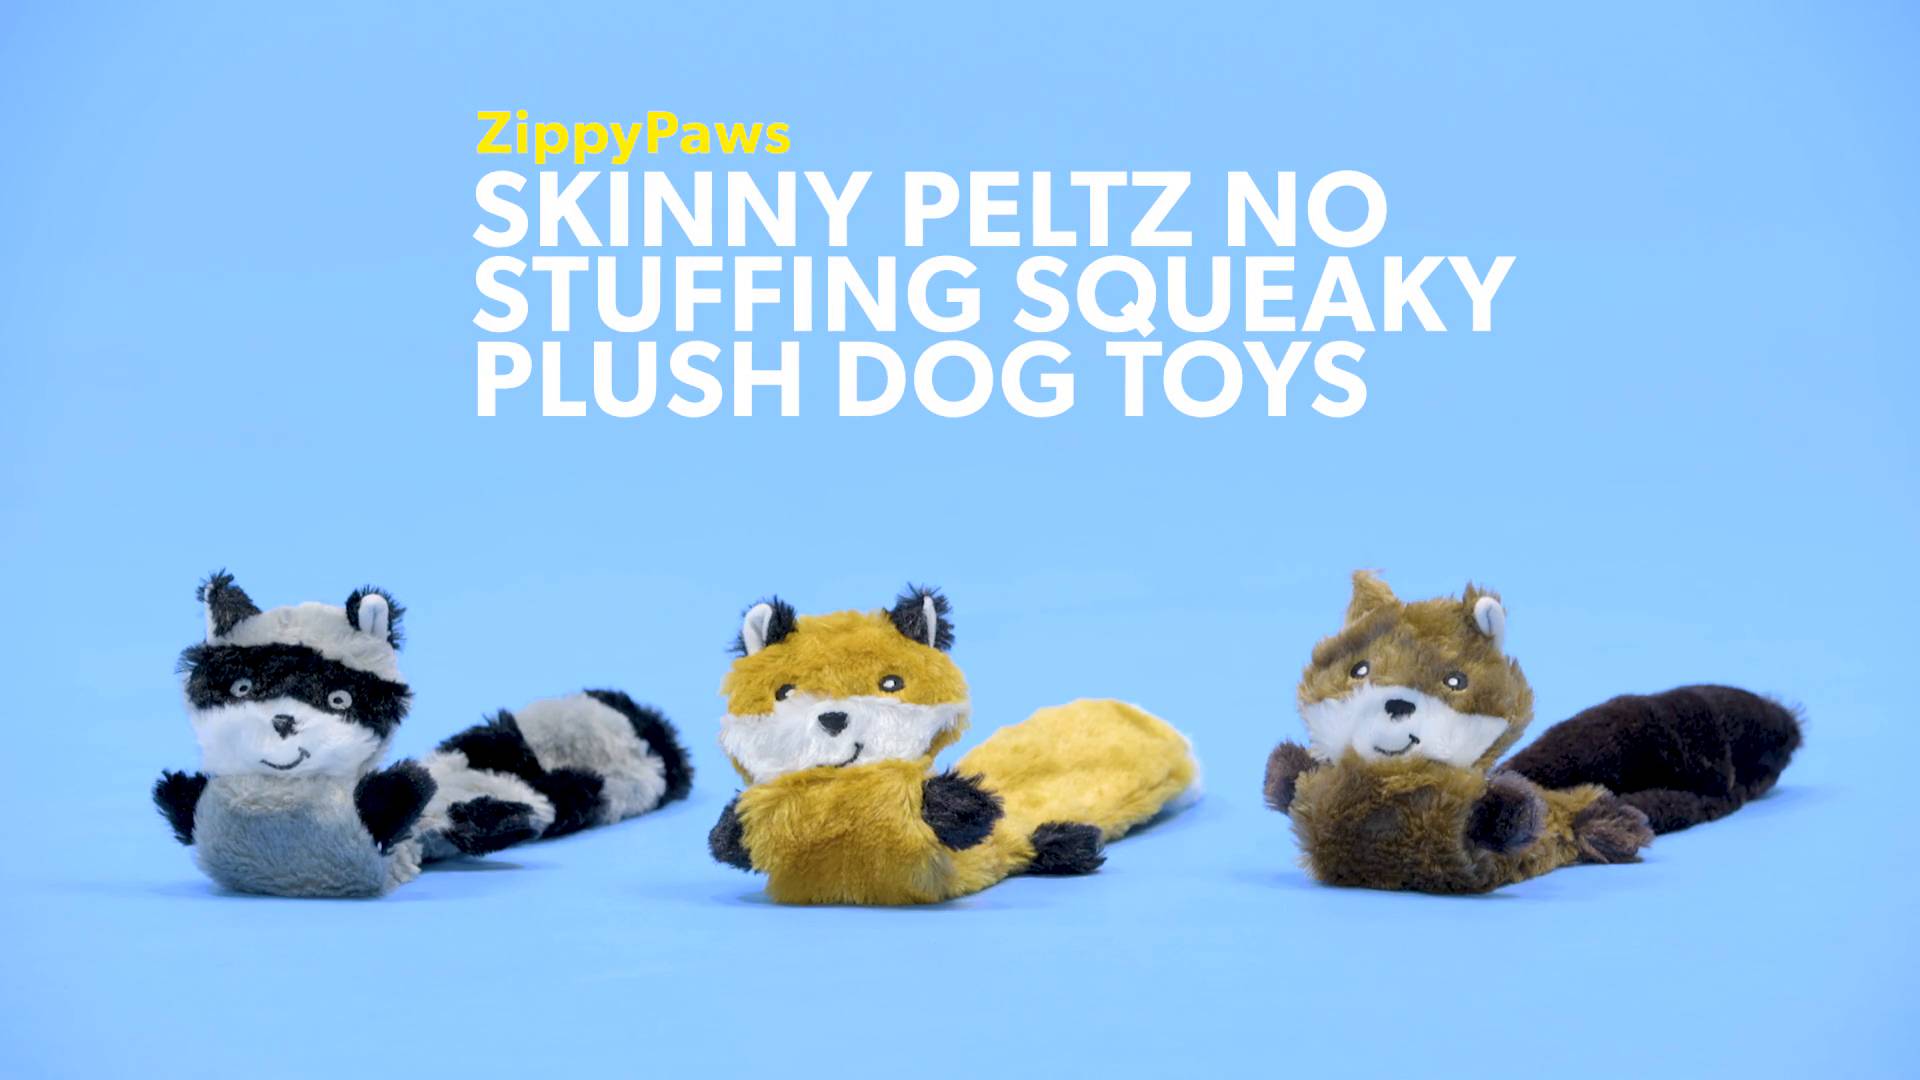 zippypaws skinny peltz no stuffing squeaky plush dog toys